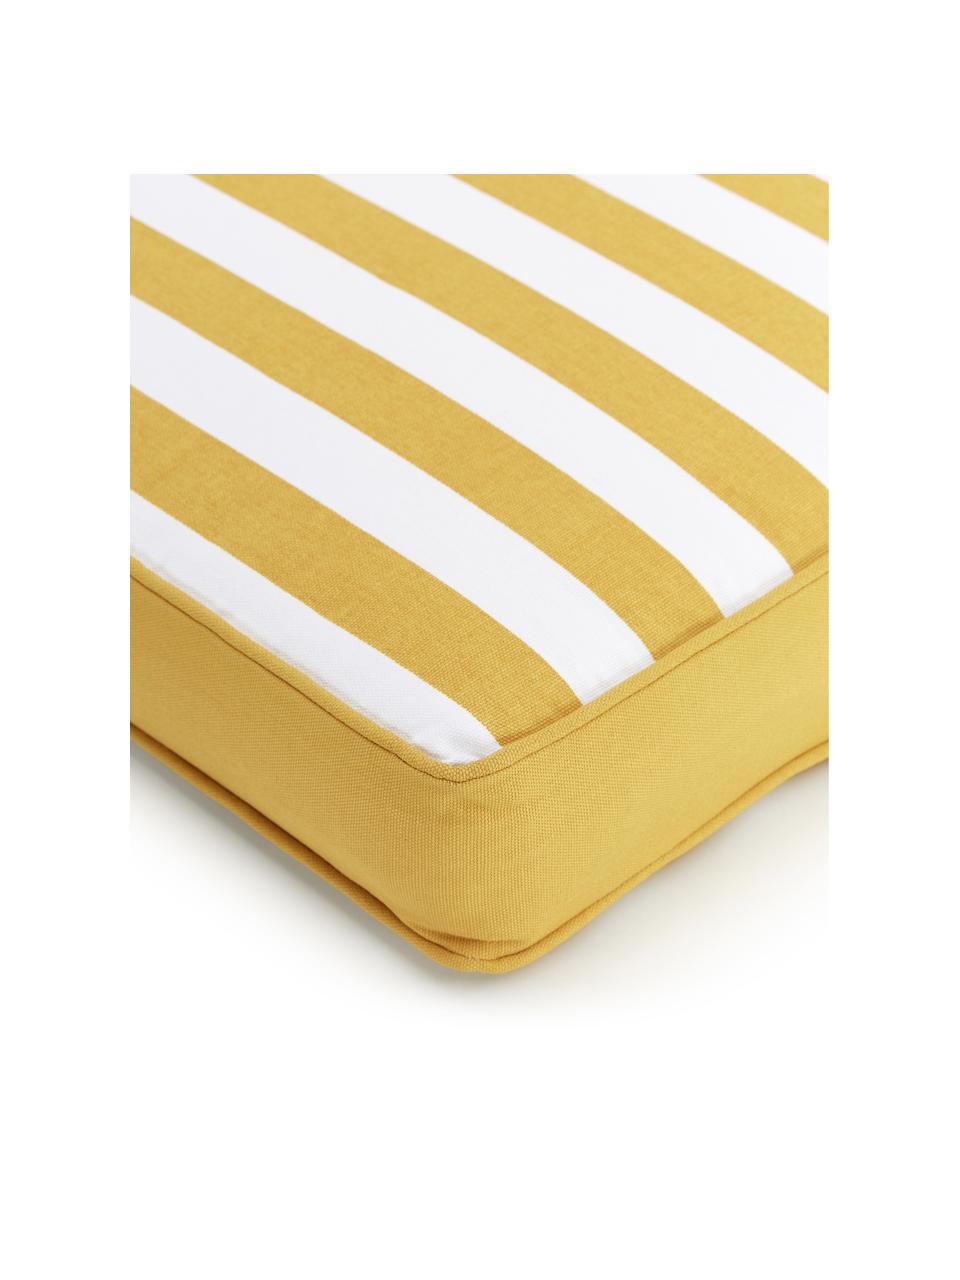 Hohes Sitzkissen Timon in Gelb/Weiß, gestreift, Bezug: 100% Baumwolle, Gelb, B 40 x L 40 cm